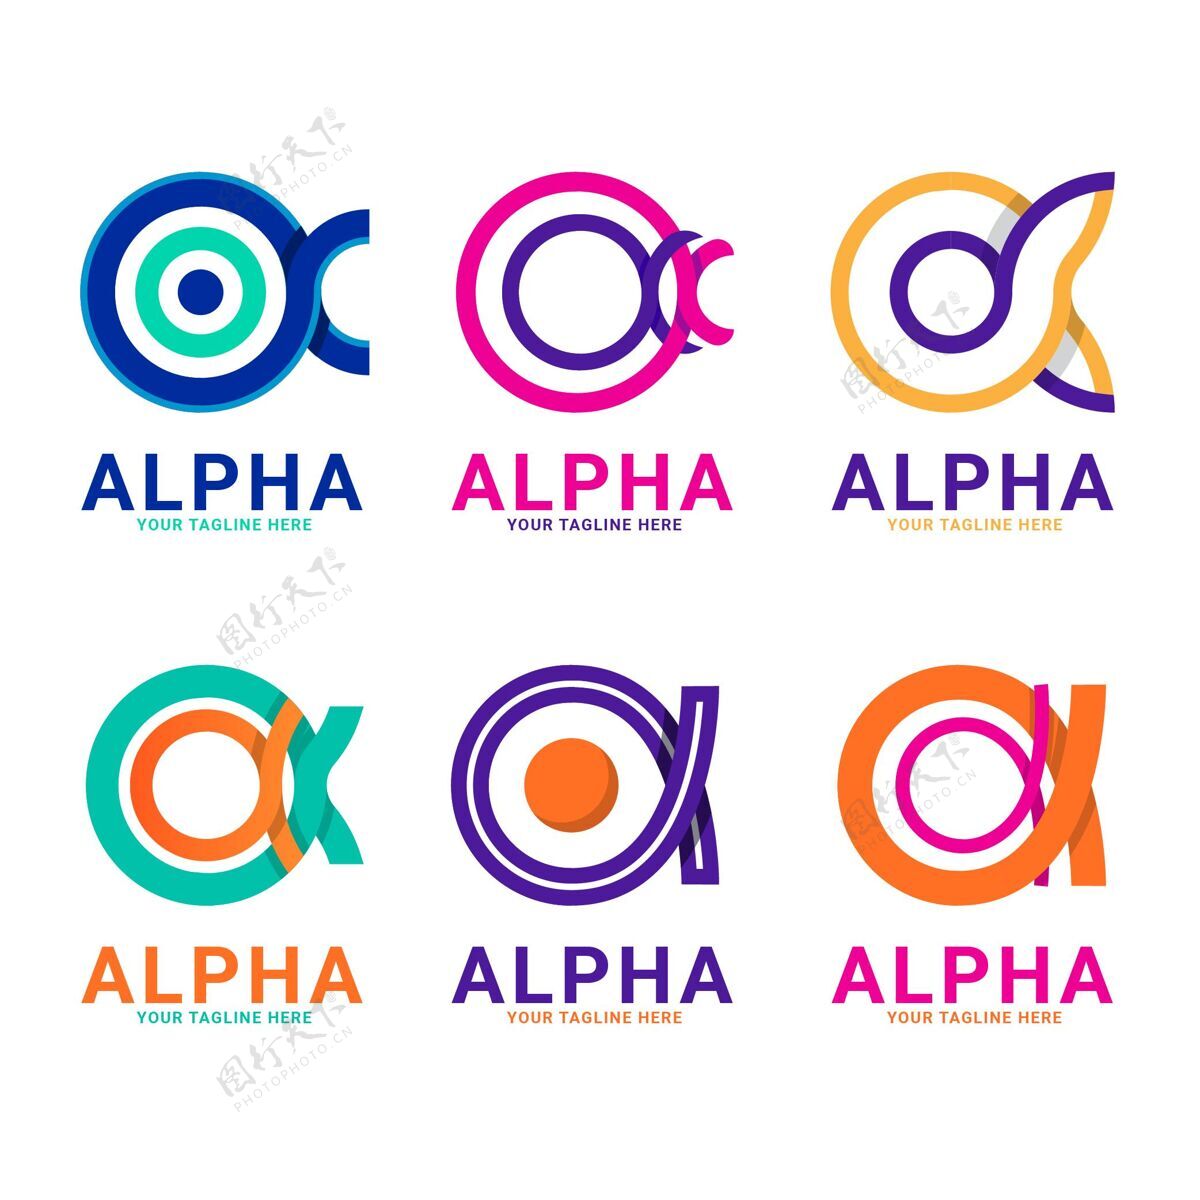 企业标识平面设计阿尔法标志包标识模板平面设计企业